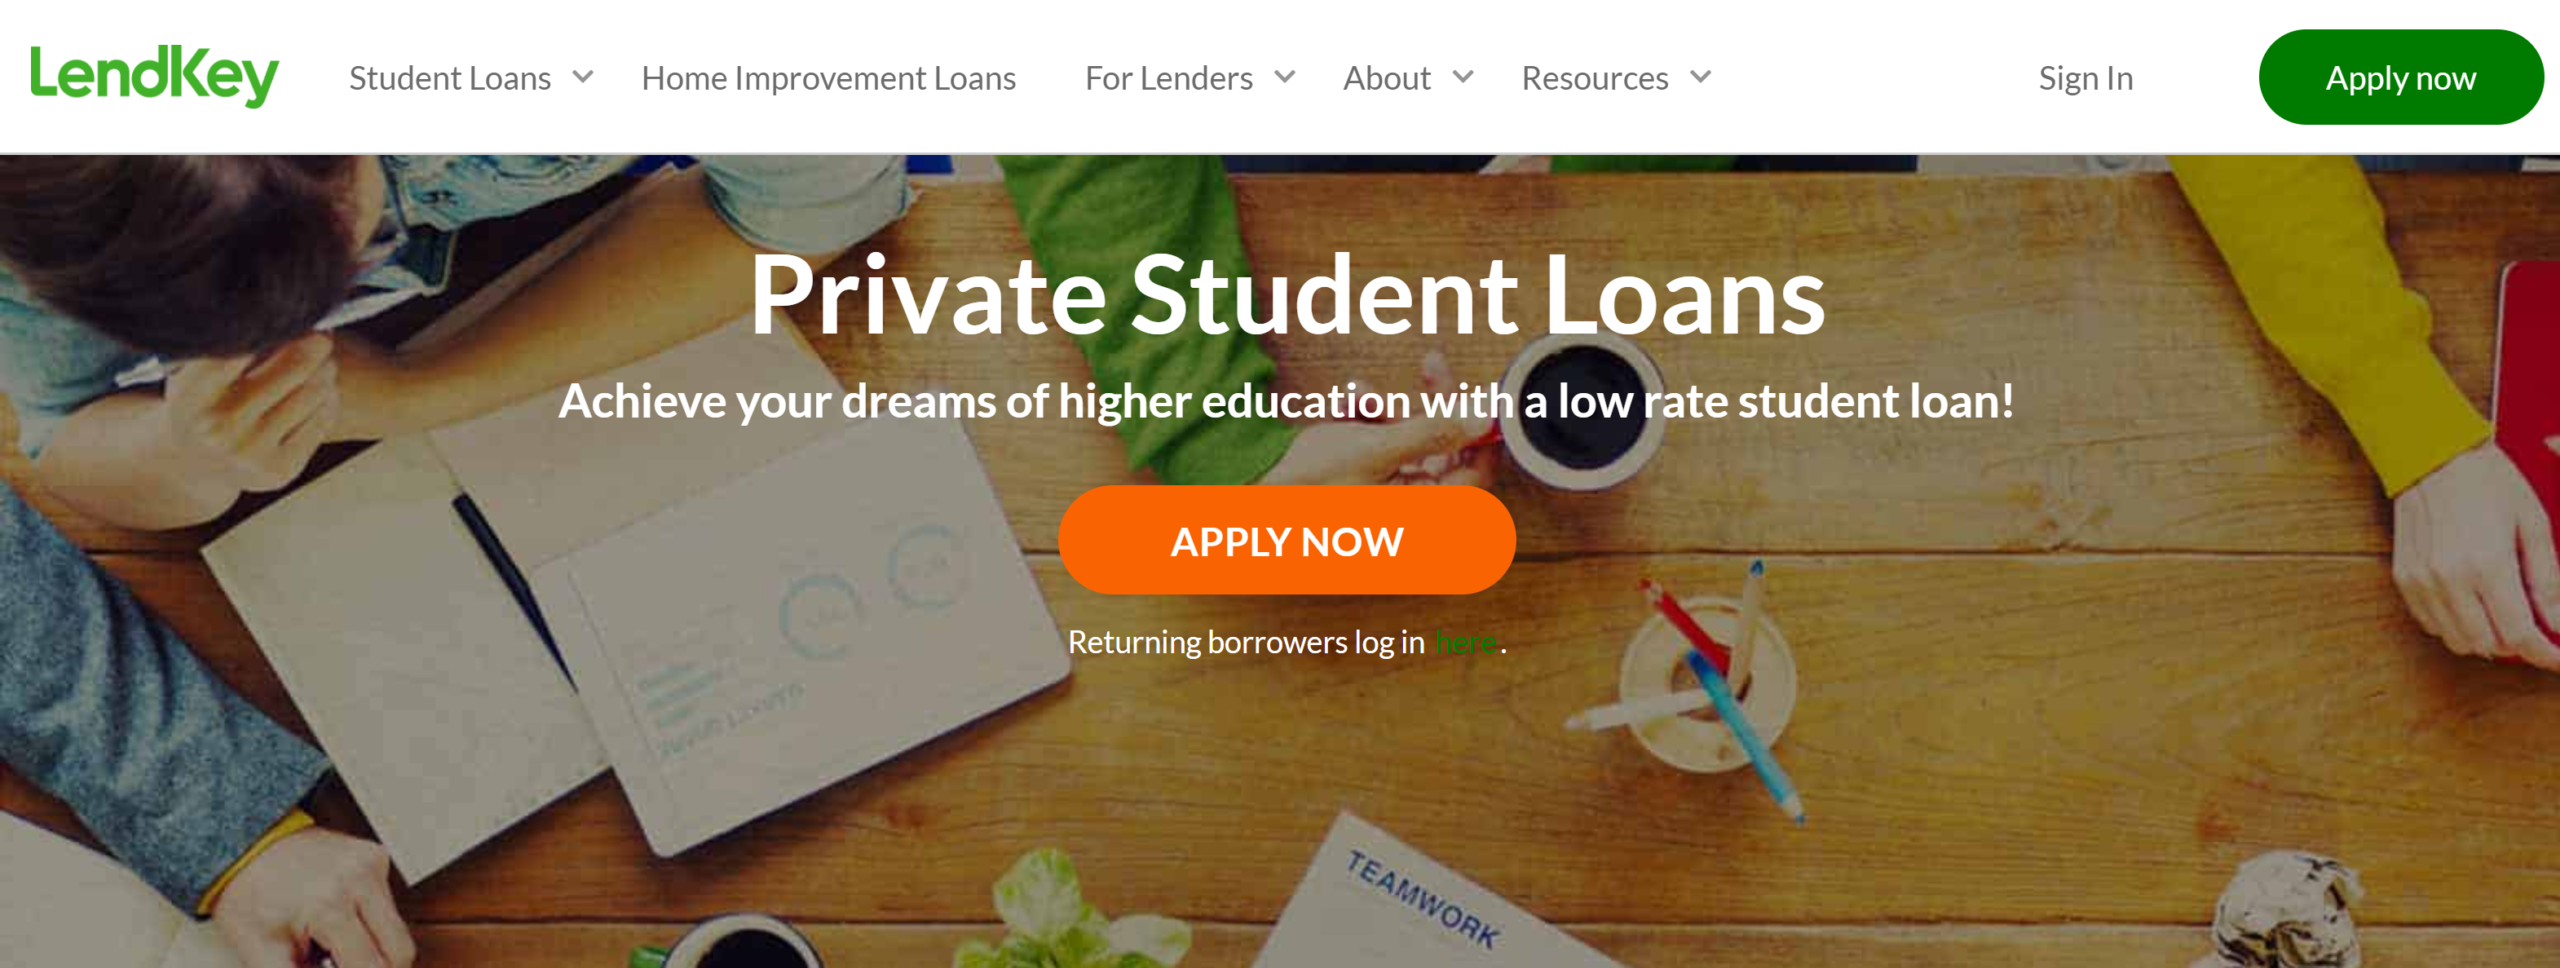 LendKey Student Loans - WHAT LENDKEY LOANS OFFERS